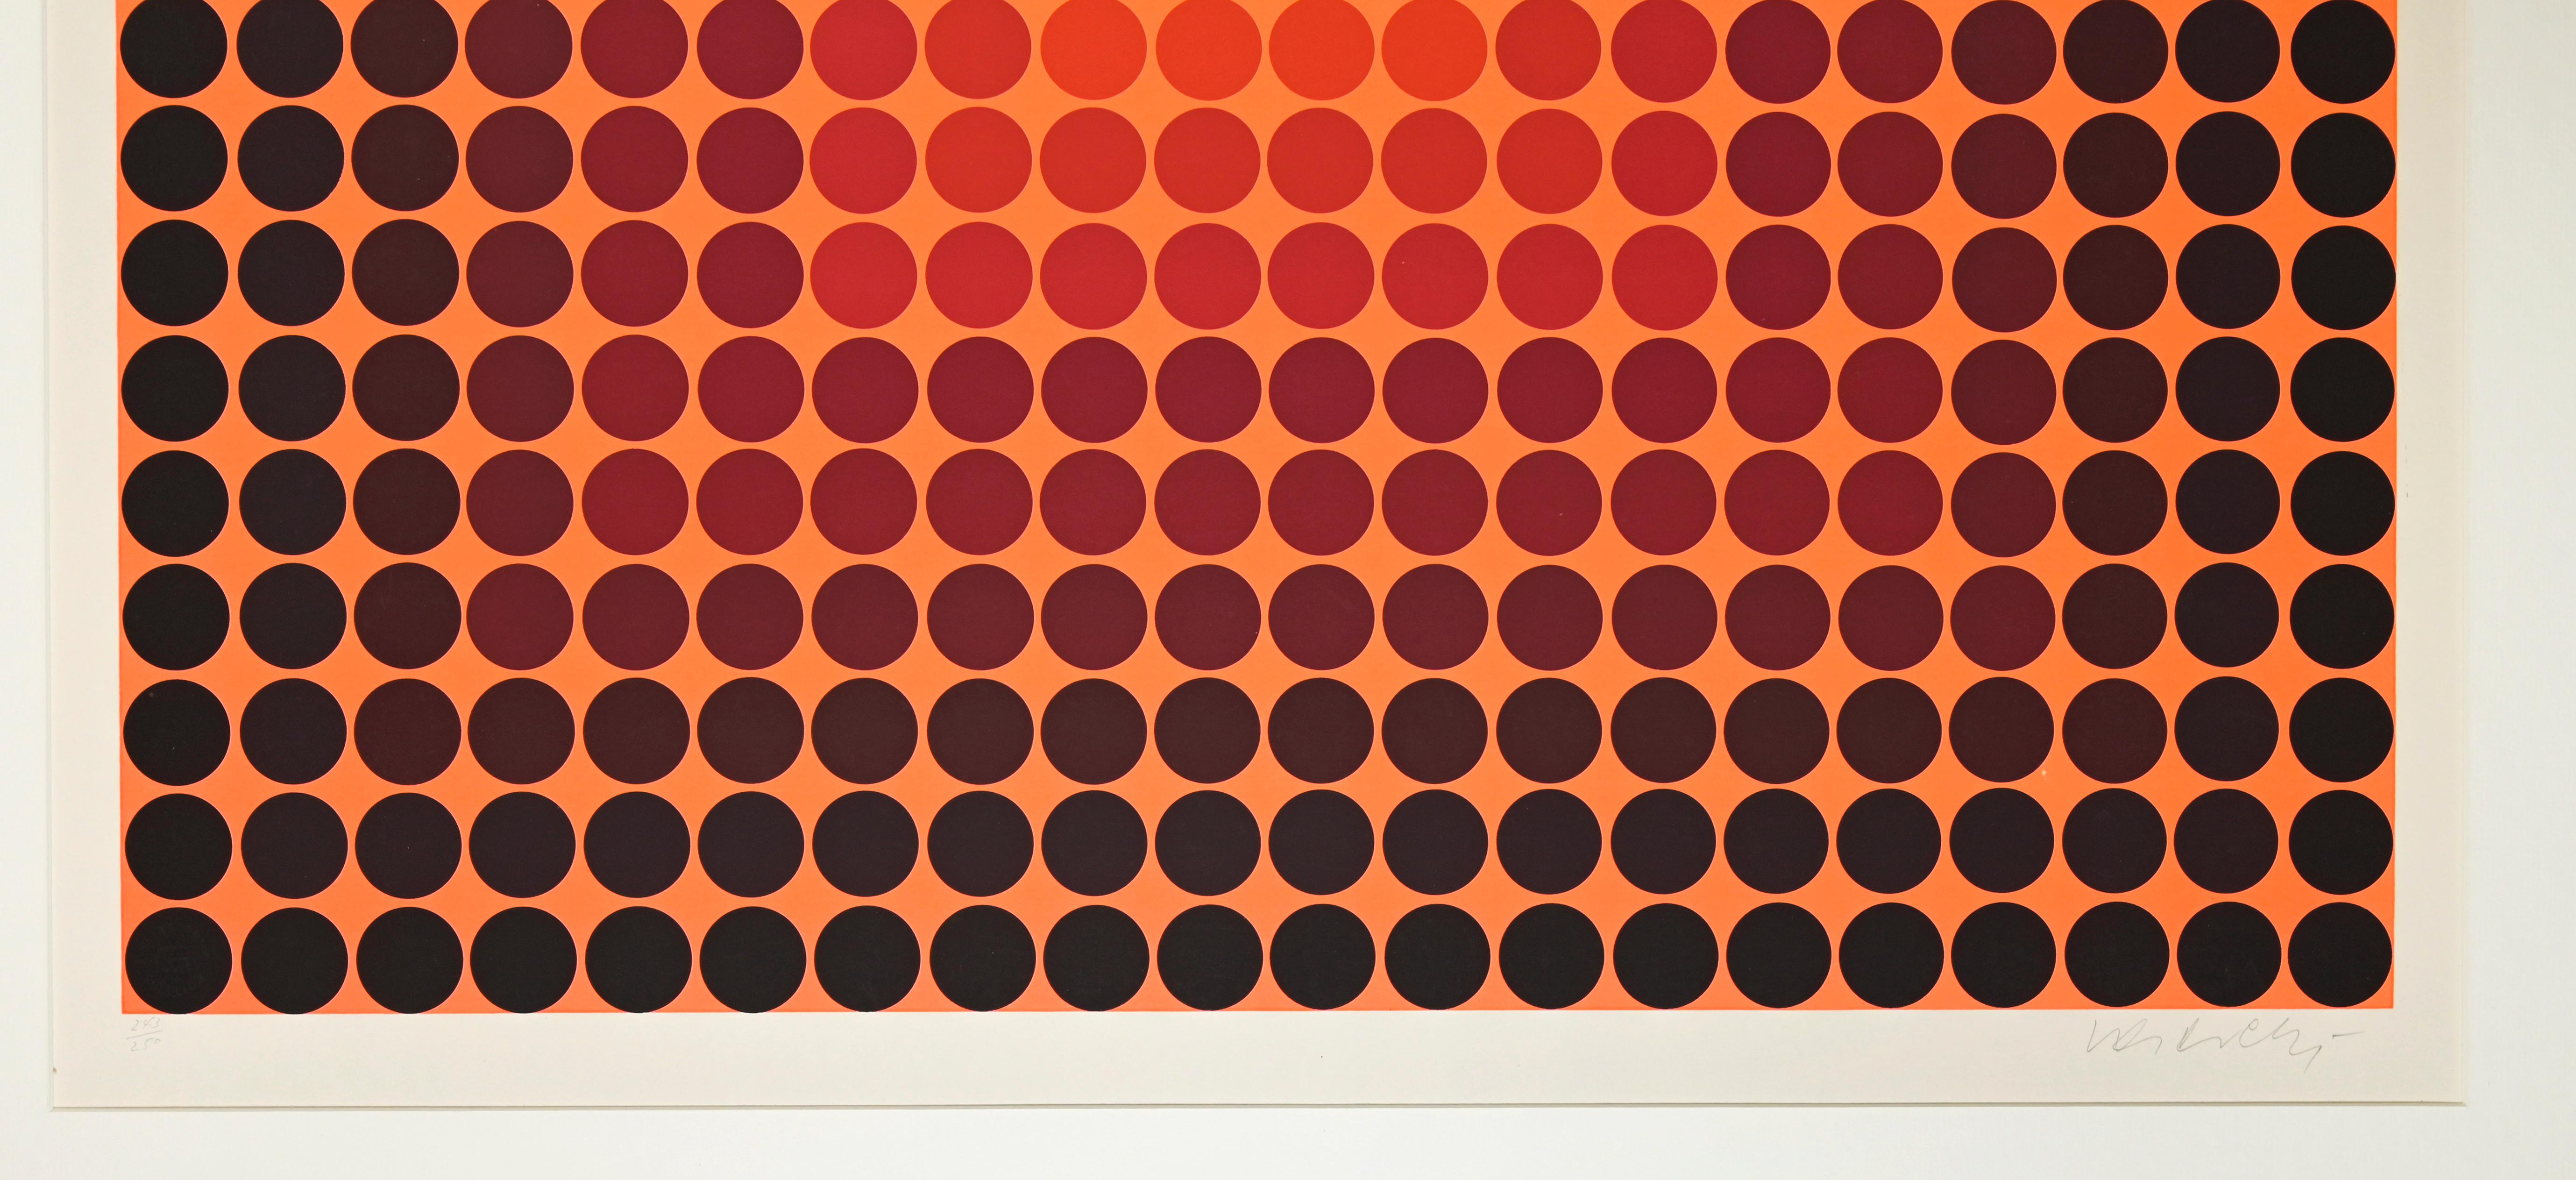 Des points noirs sur orange - Impression sérigraphiée de V. Vasarely - 1965 - Print de Victor Vasarely